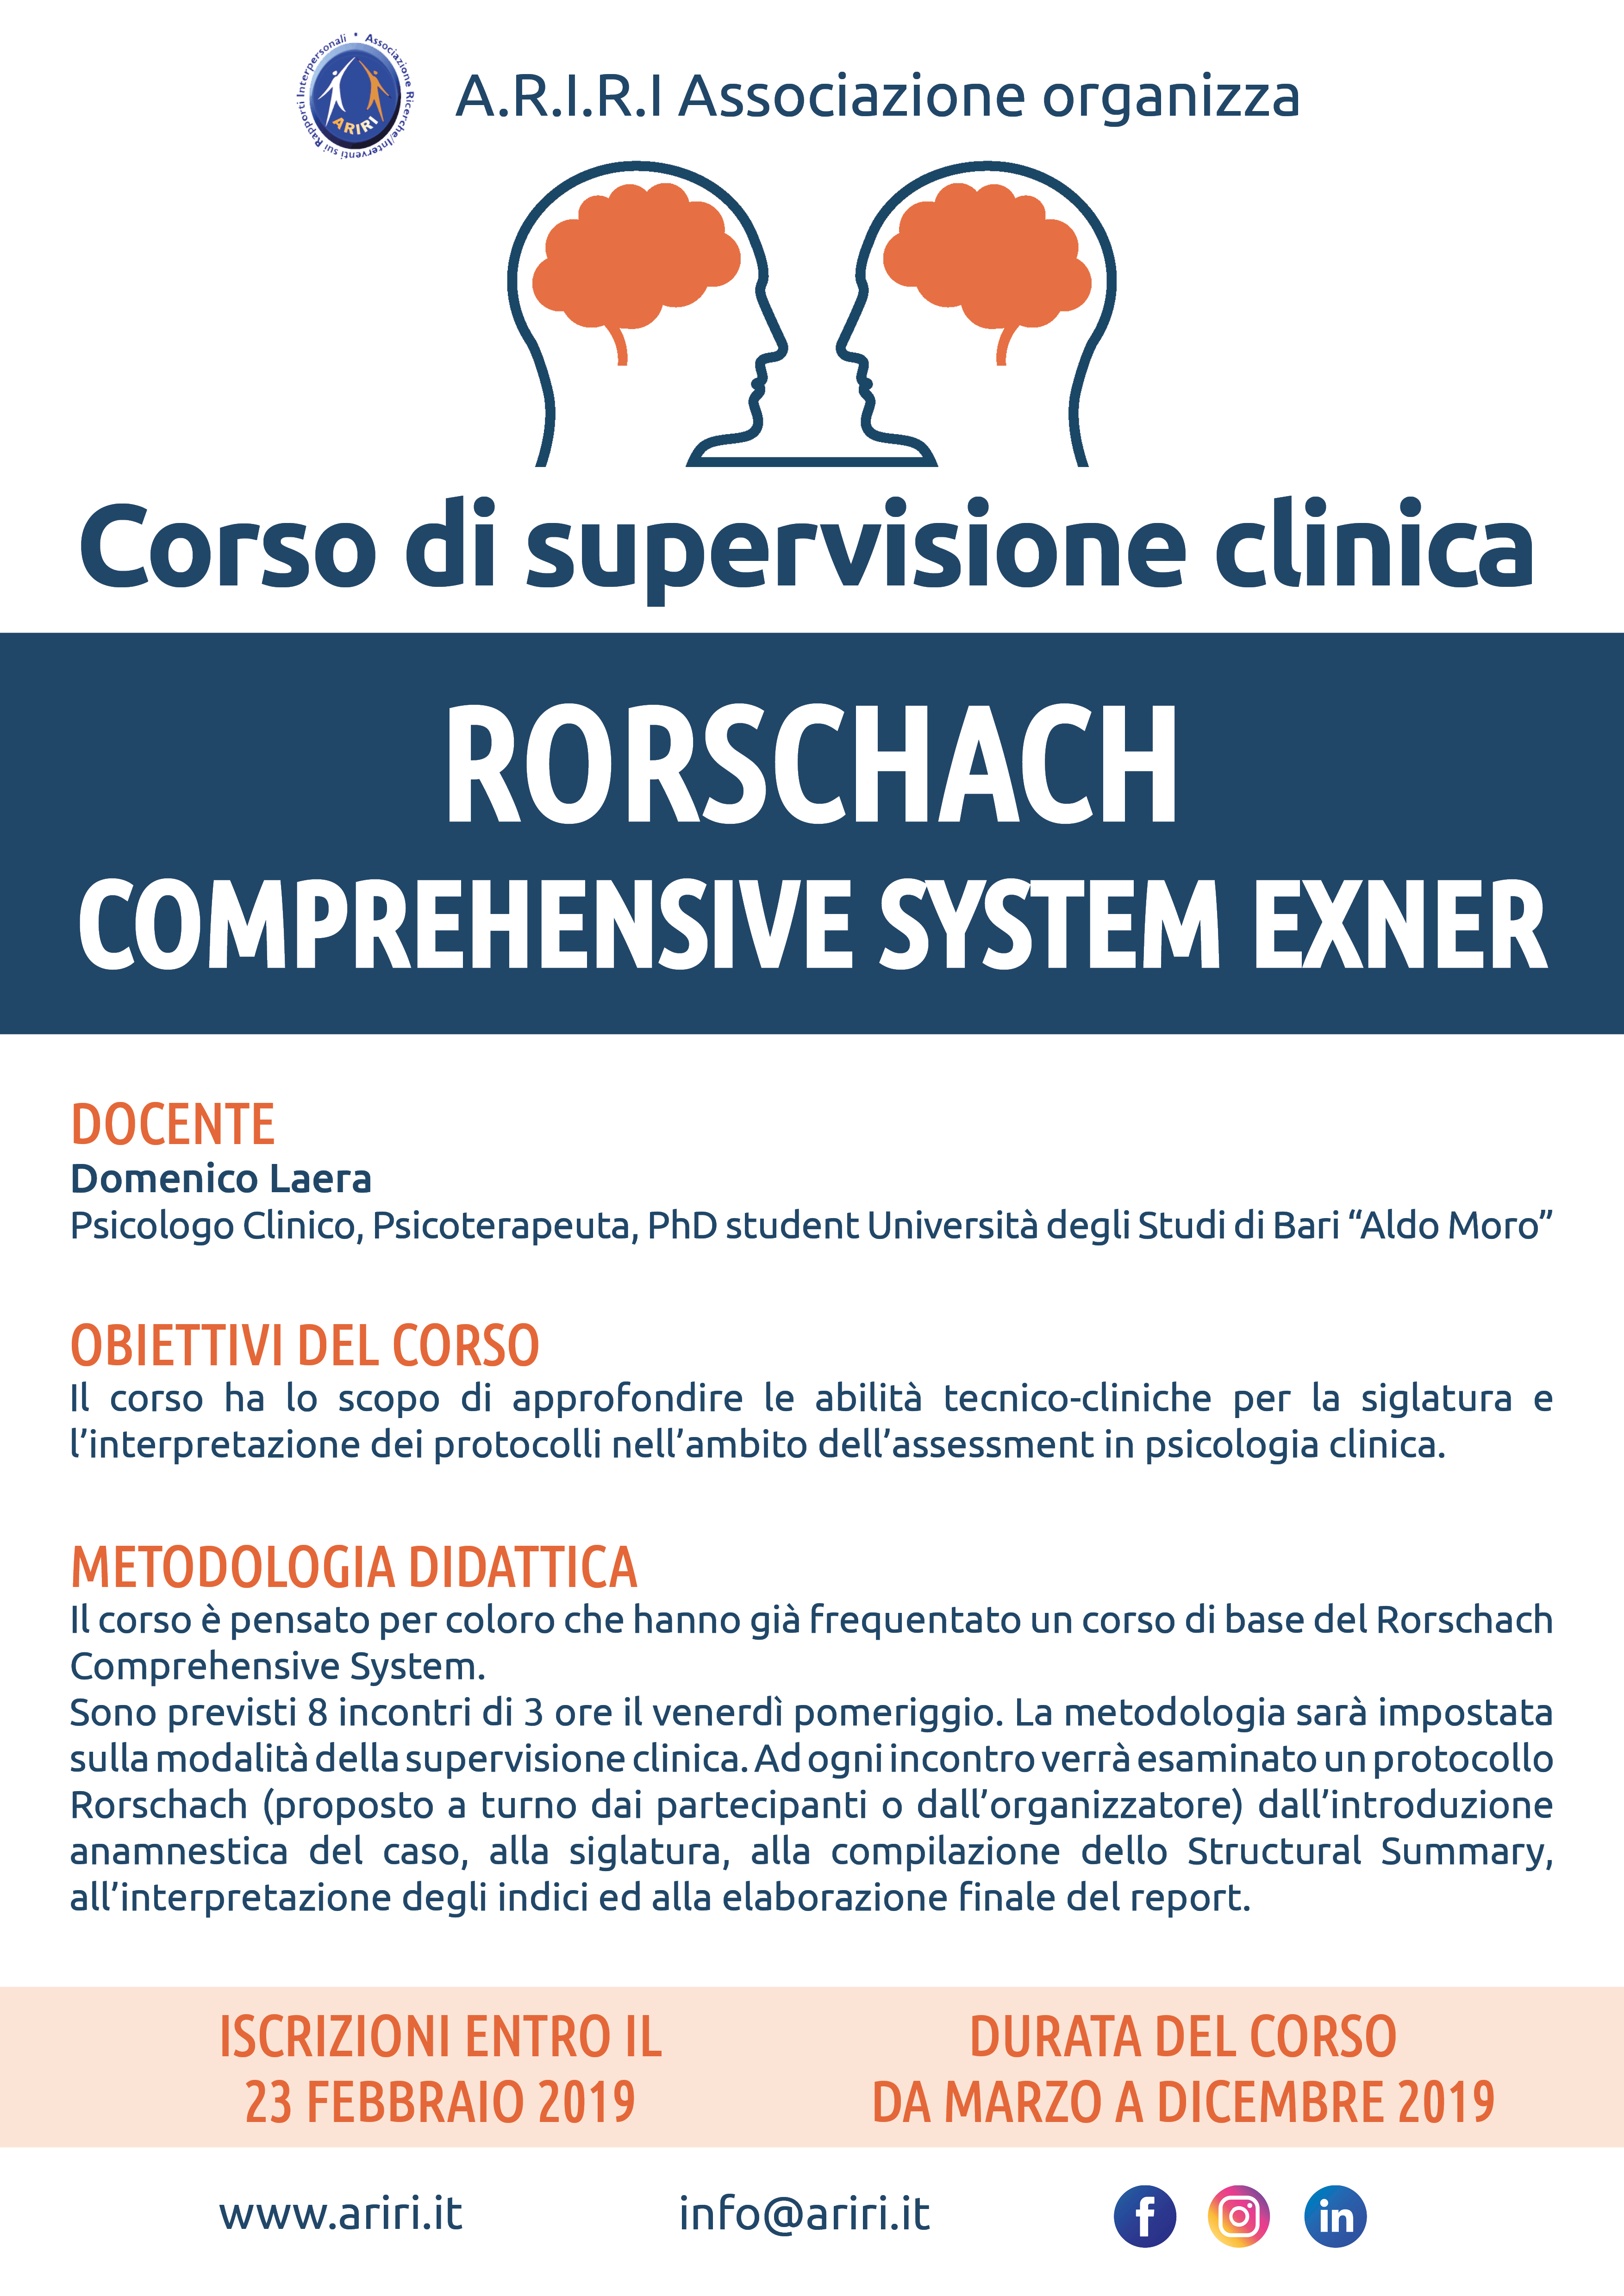 Corso di supervisione clinica Rorschach Comprehensive System di Exner